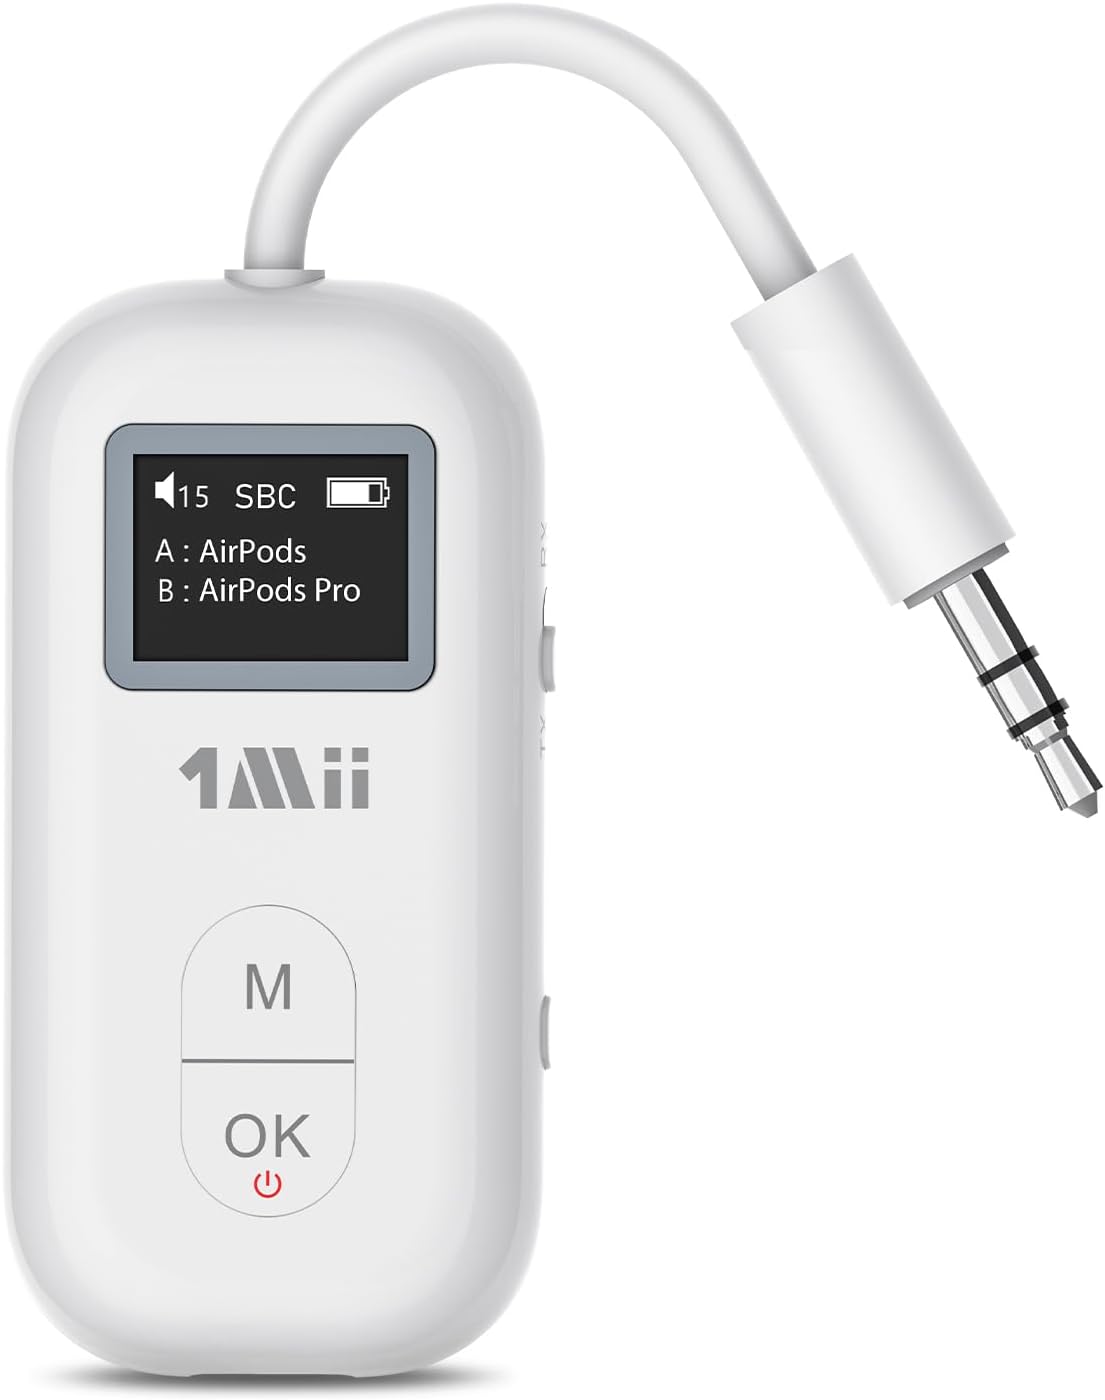 Clé Bluetooth, Dongle USB - Récepteur Émetteur, Ultra-compact